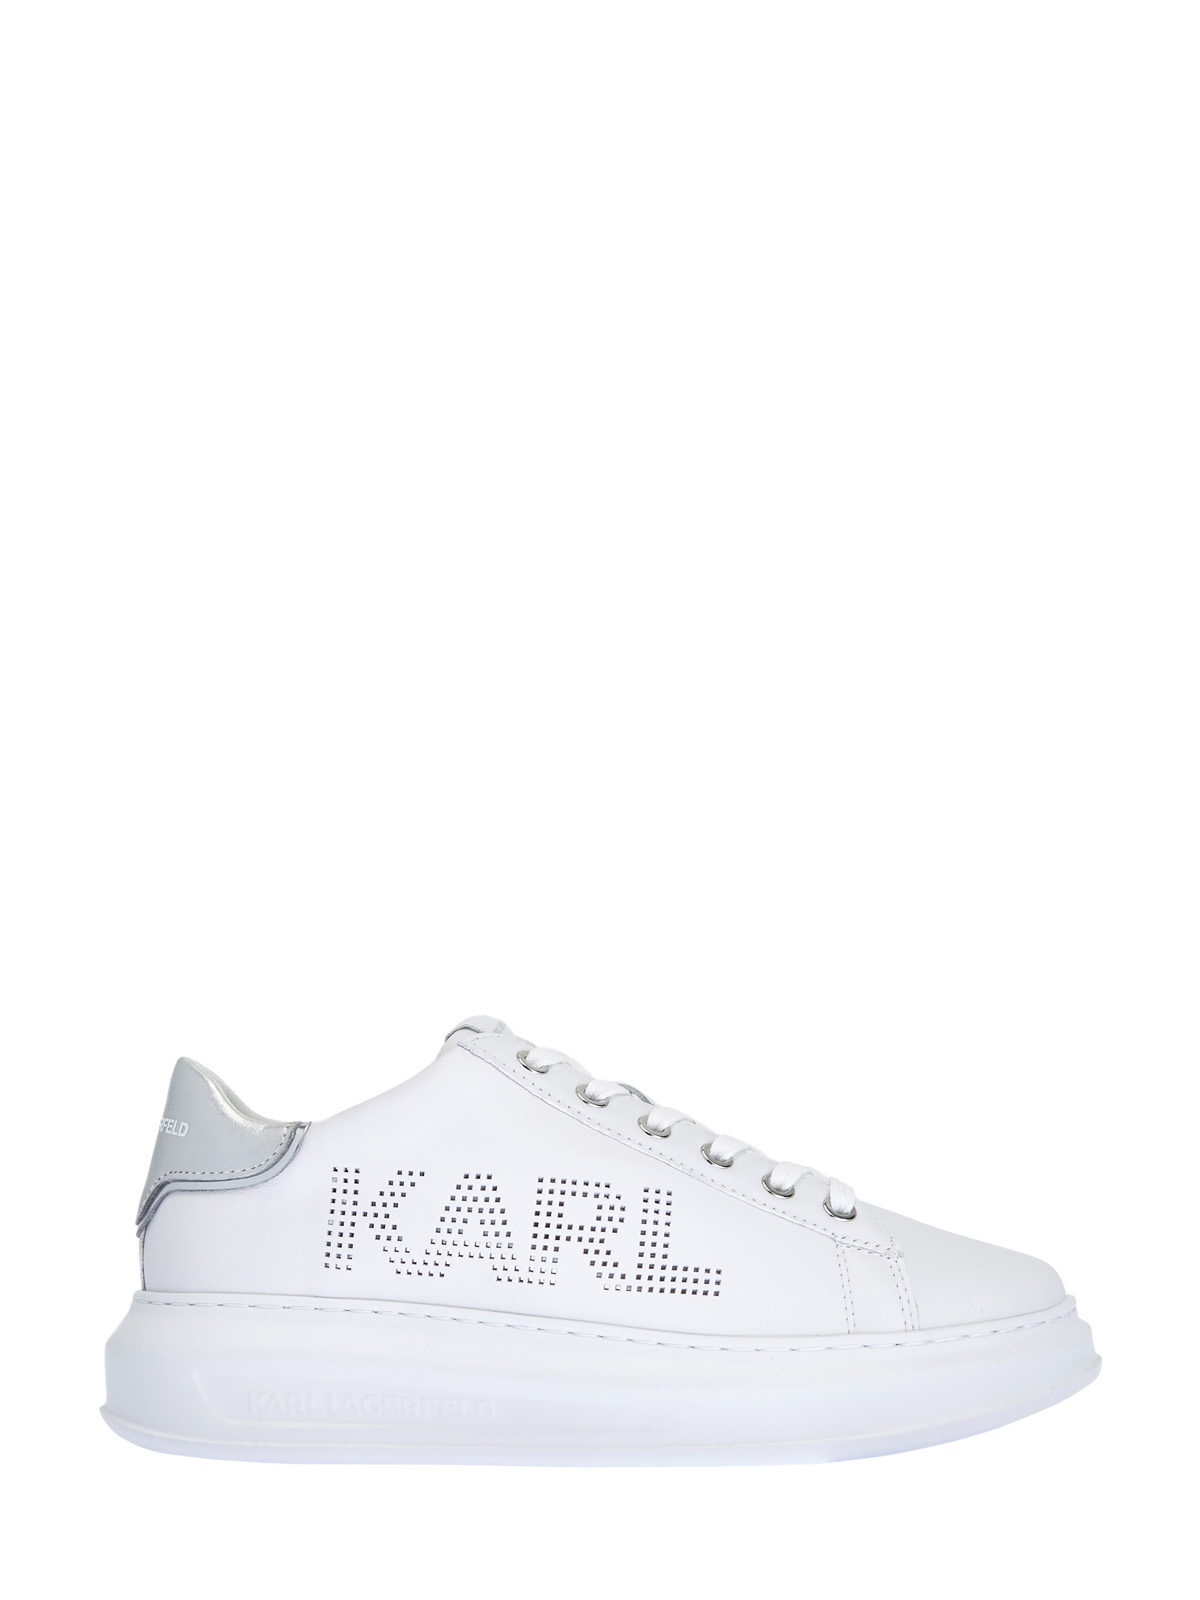 Массивные кроссовки Maxi Kup с перфорированным логотипом KARL LAGERFELD, цвет белый, размер 5;8;9 - фото 1